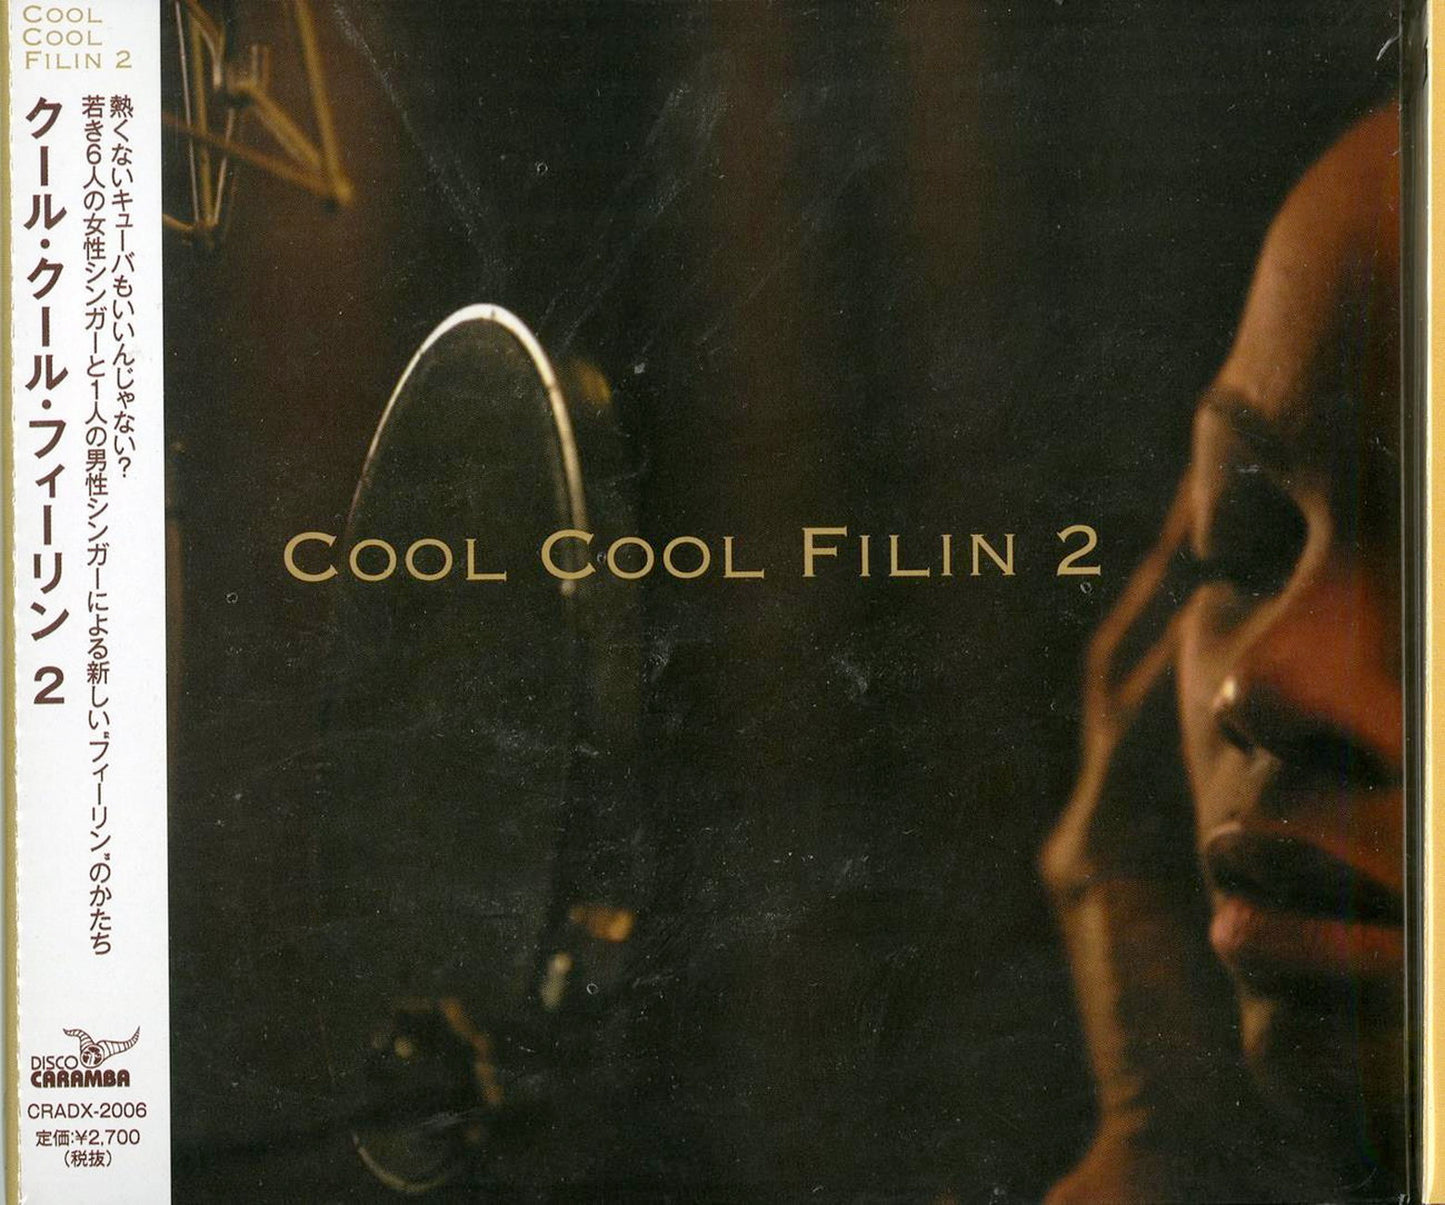 Cool Cool Filin - Cool Cool Filin 2 - Japan CD